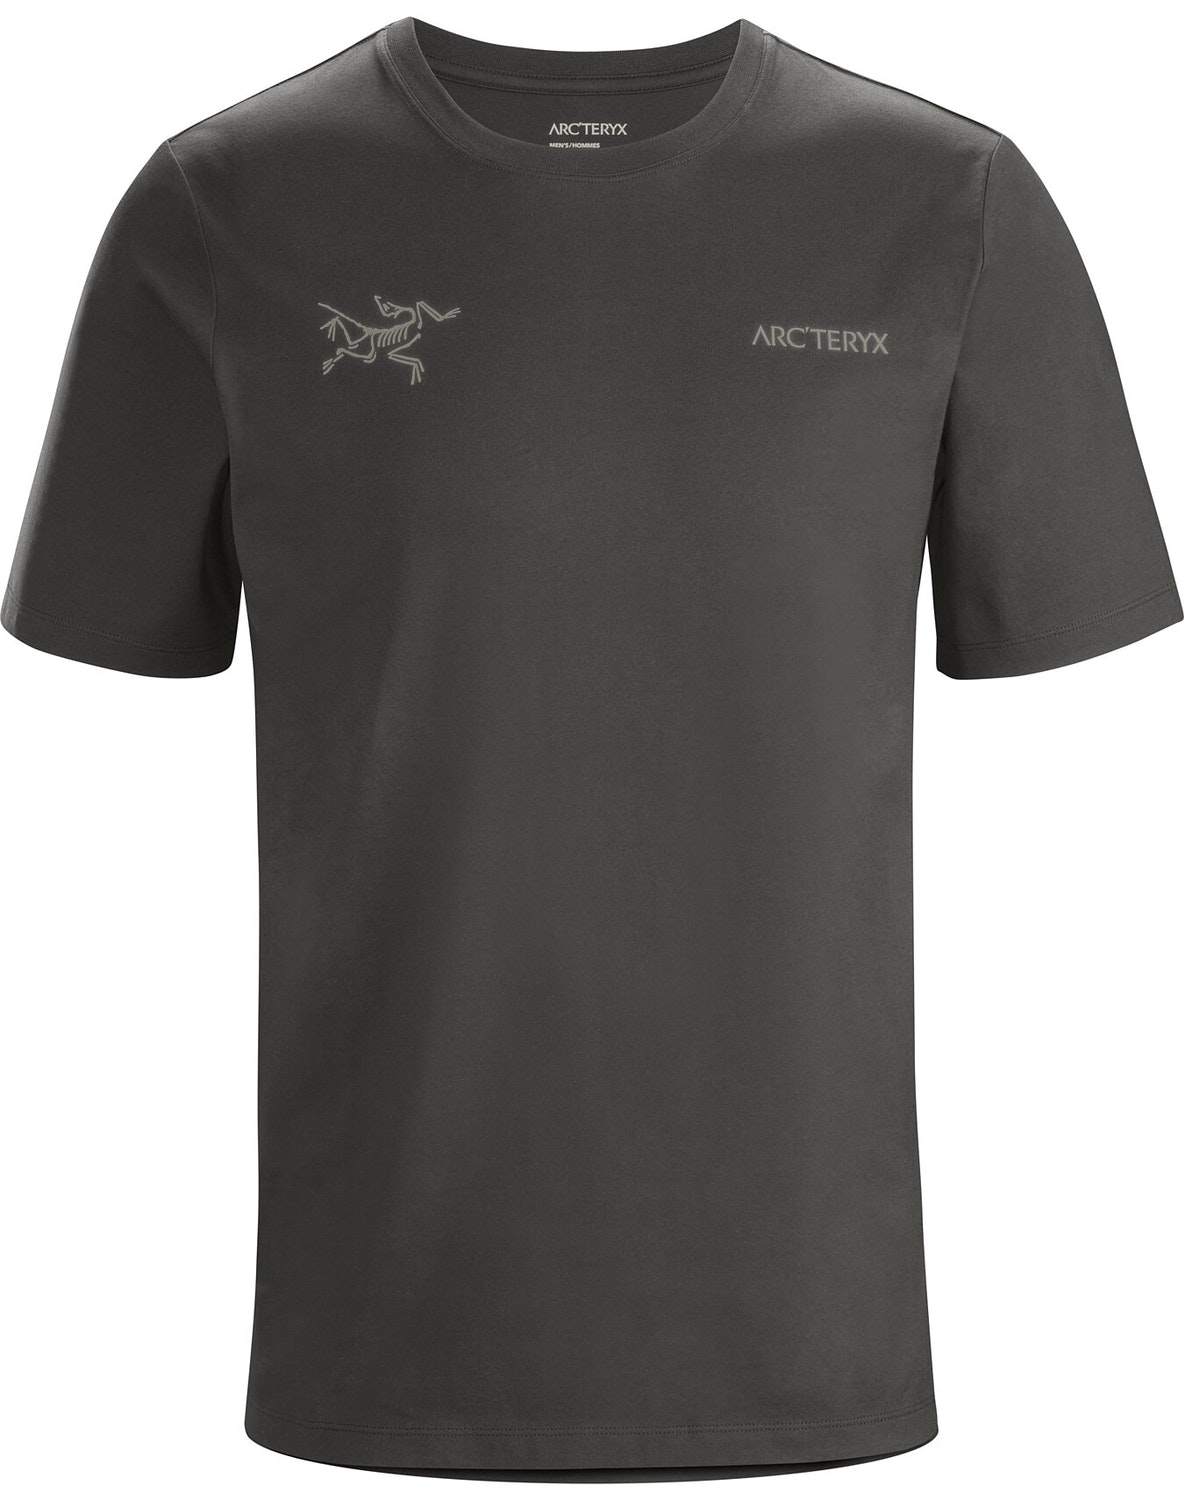 T-shirt Arc'teryx Split Uomo Grigie Scuro - IT-35139657